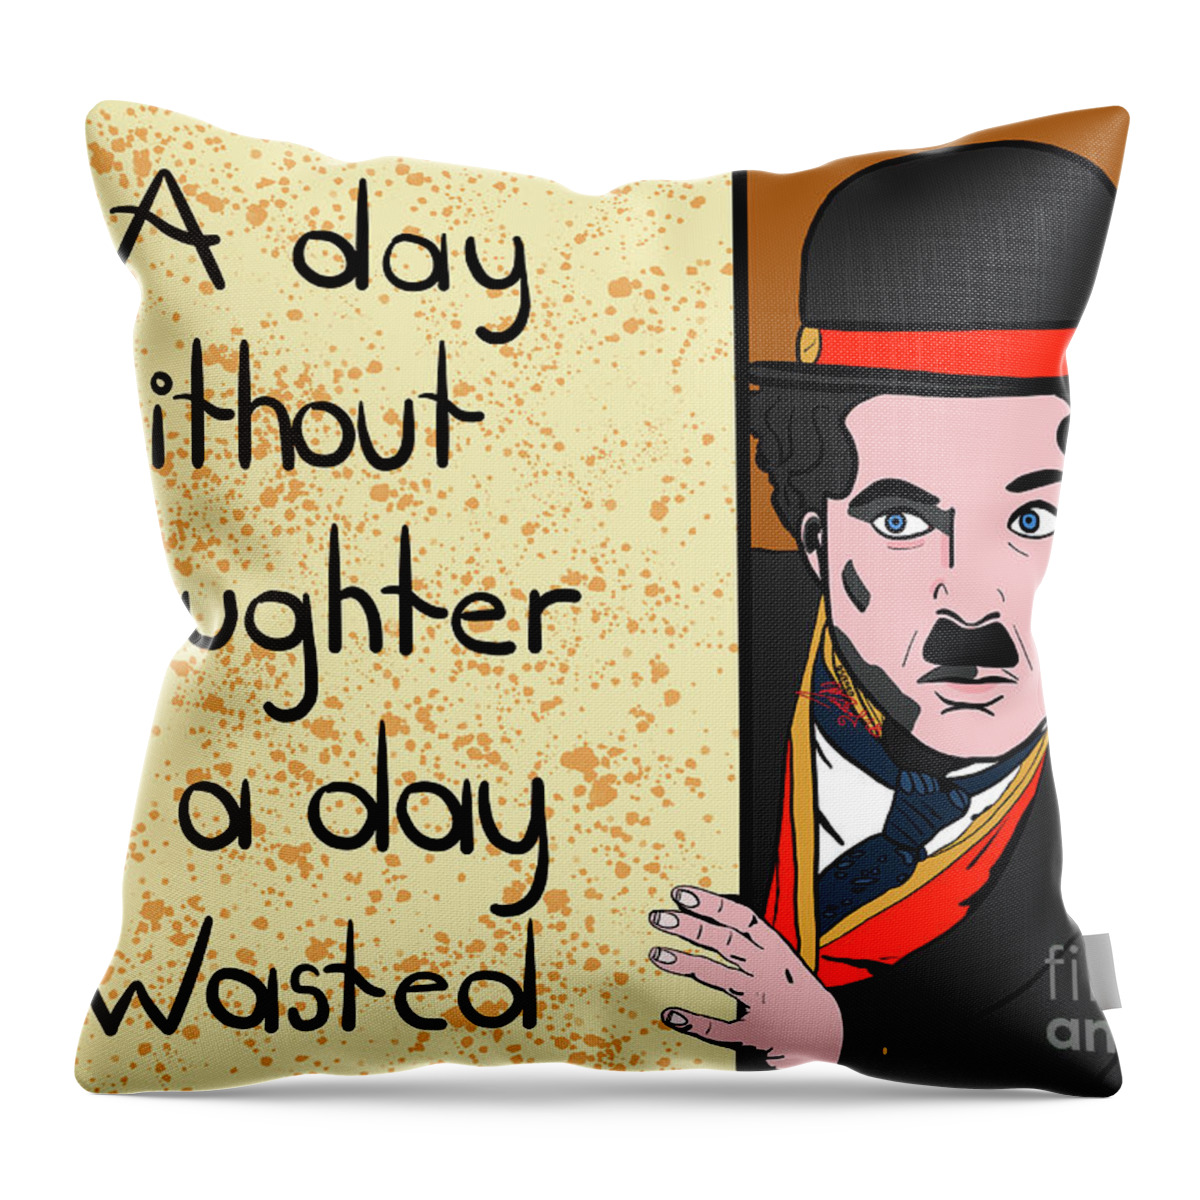 Charlie Chaplin Throw Pillow featuring the digital art Charlie Chaplin by Marisol VB